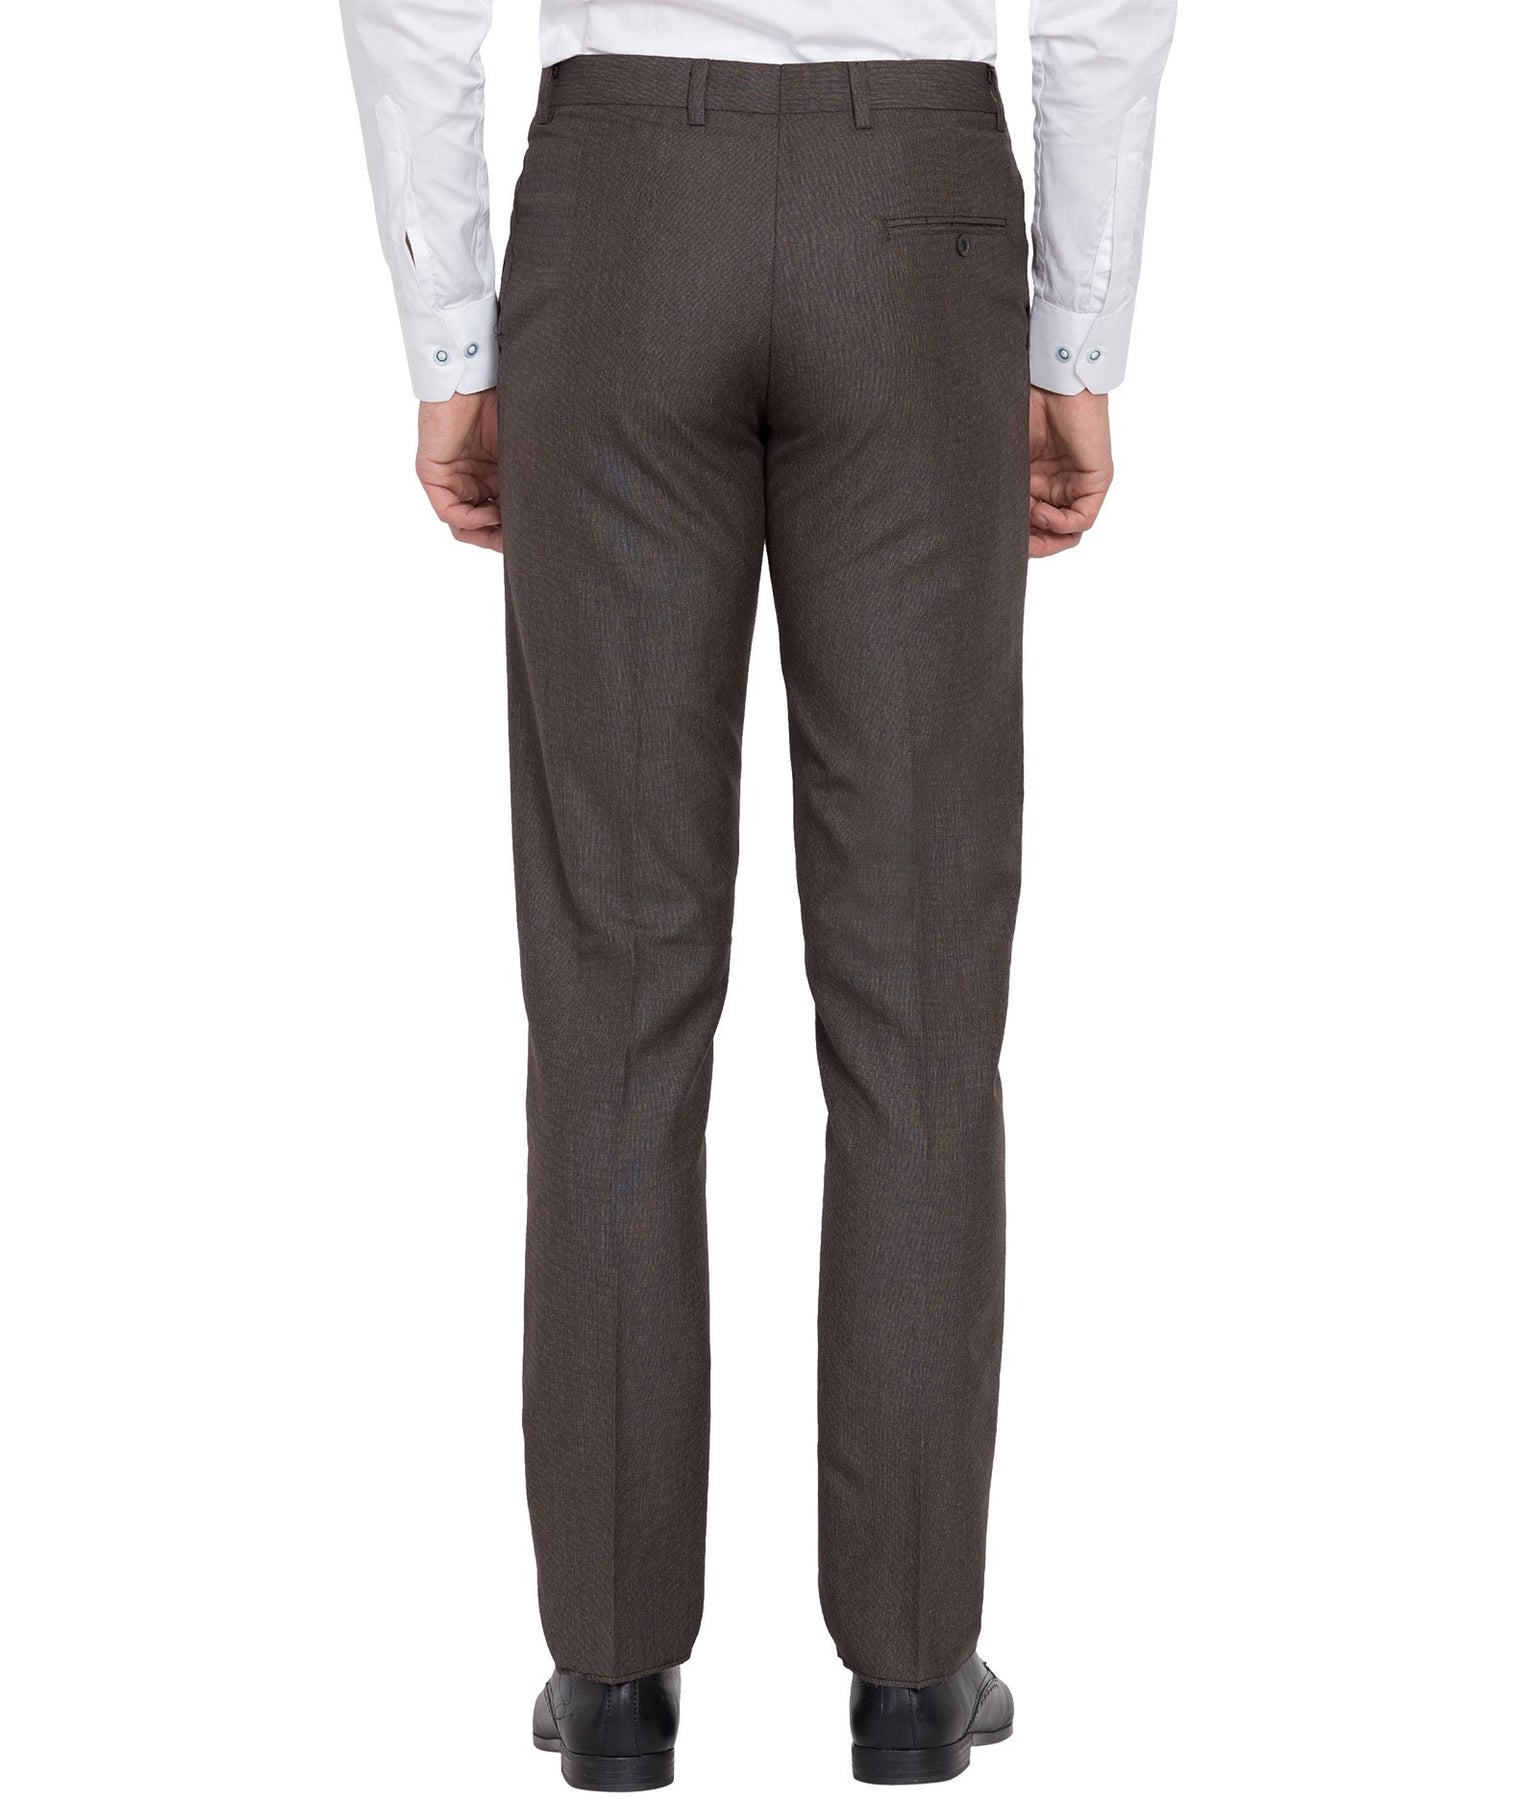 Buy Black Mid Rise Slim Fit Formal Pants for Men Online at Selected Homme   261211003